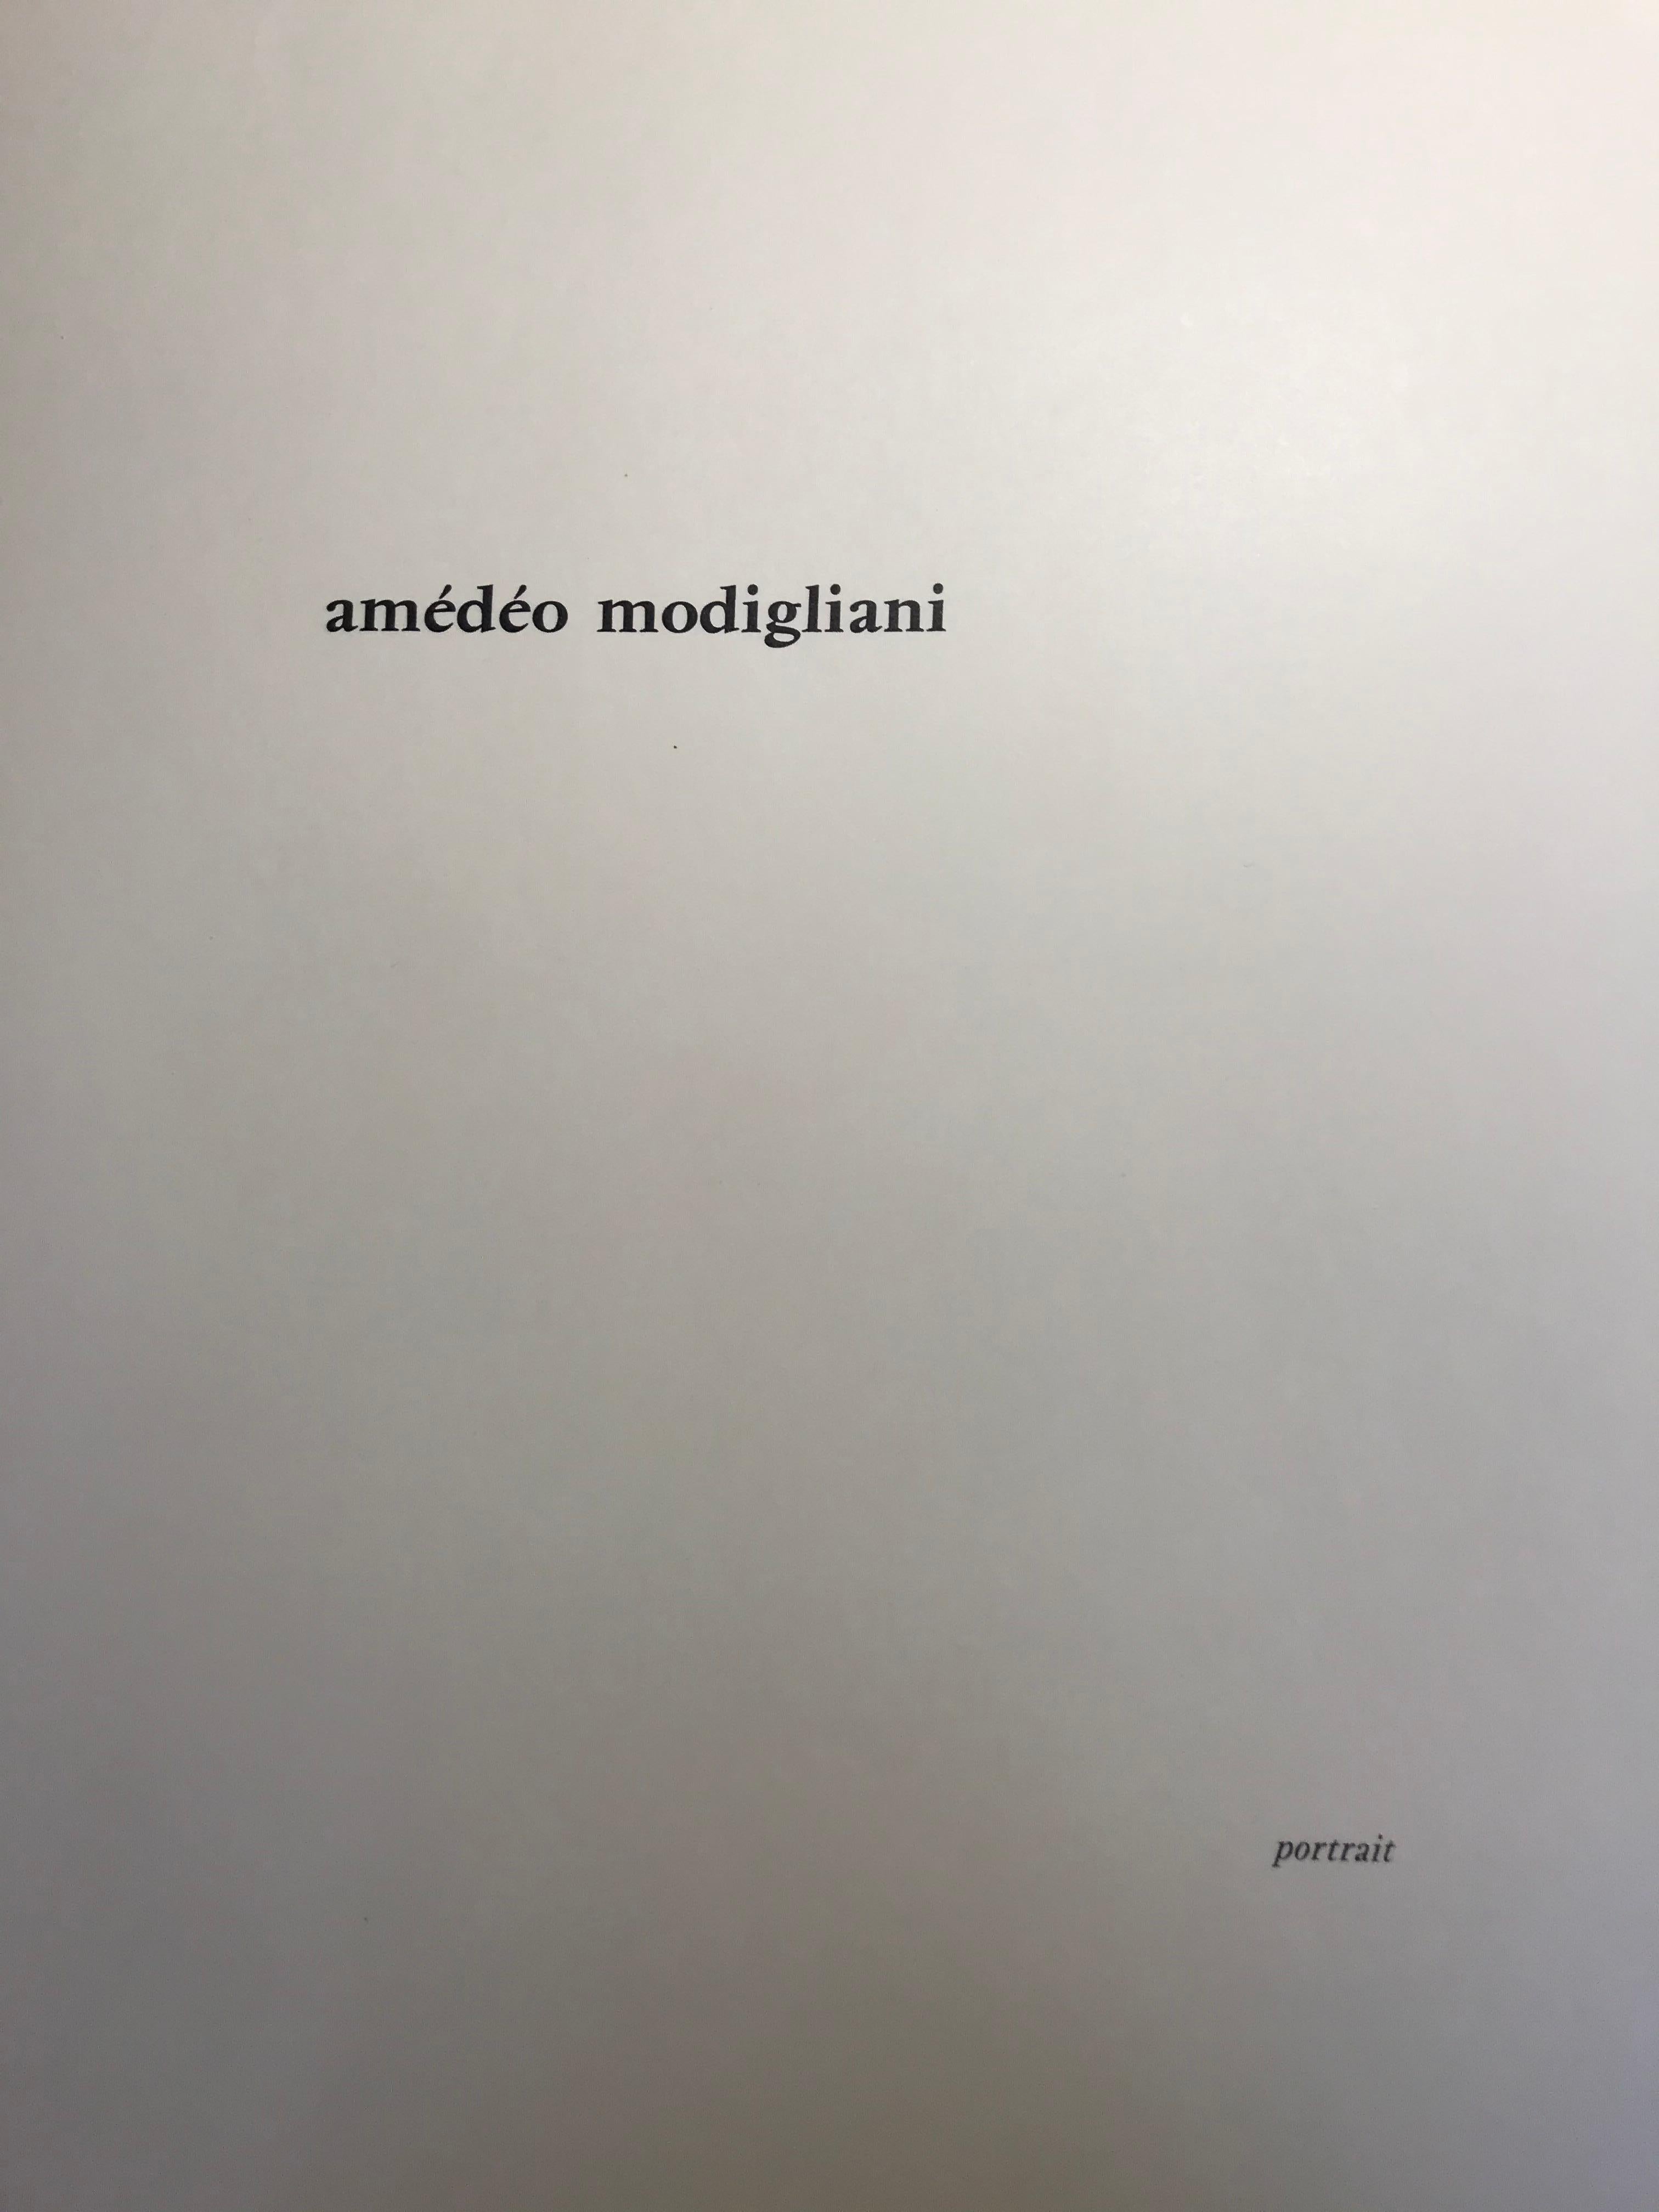 Amadeo Modigliani  Portrait 3